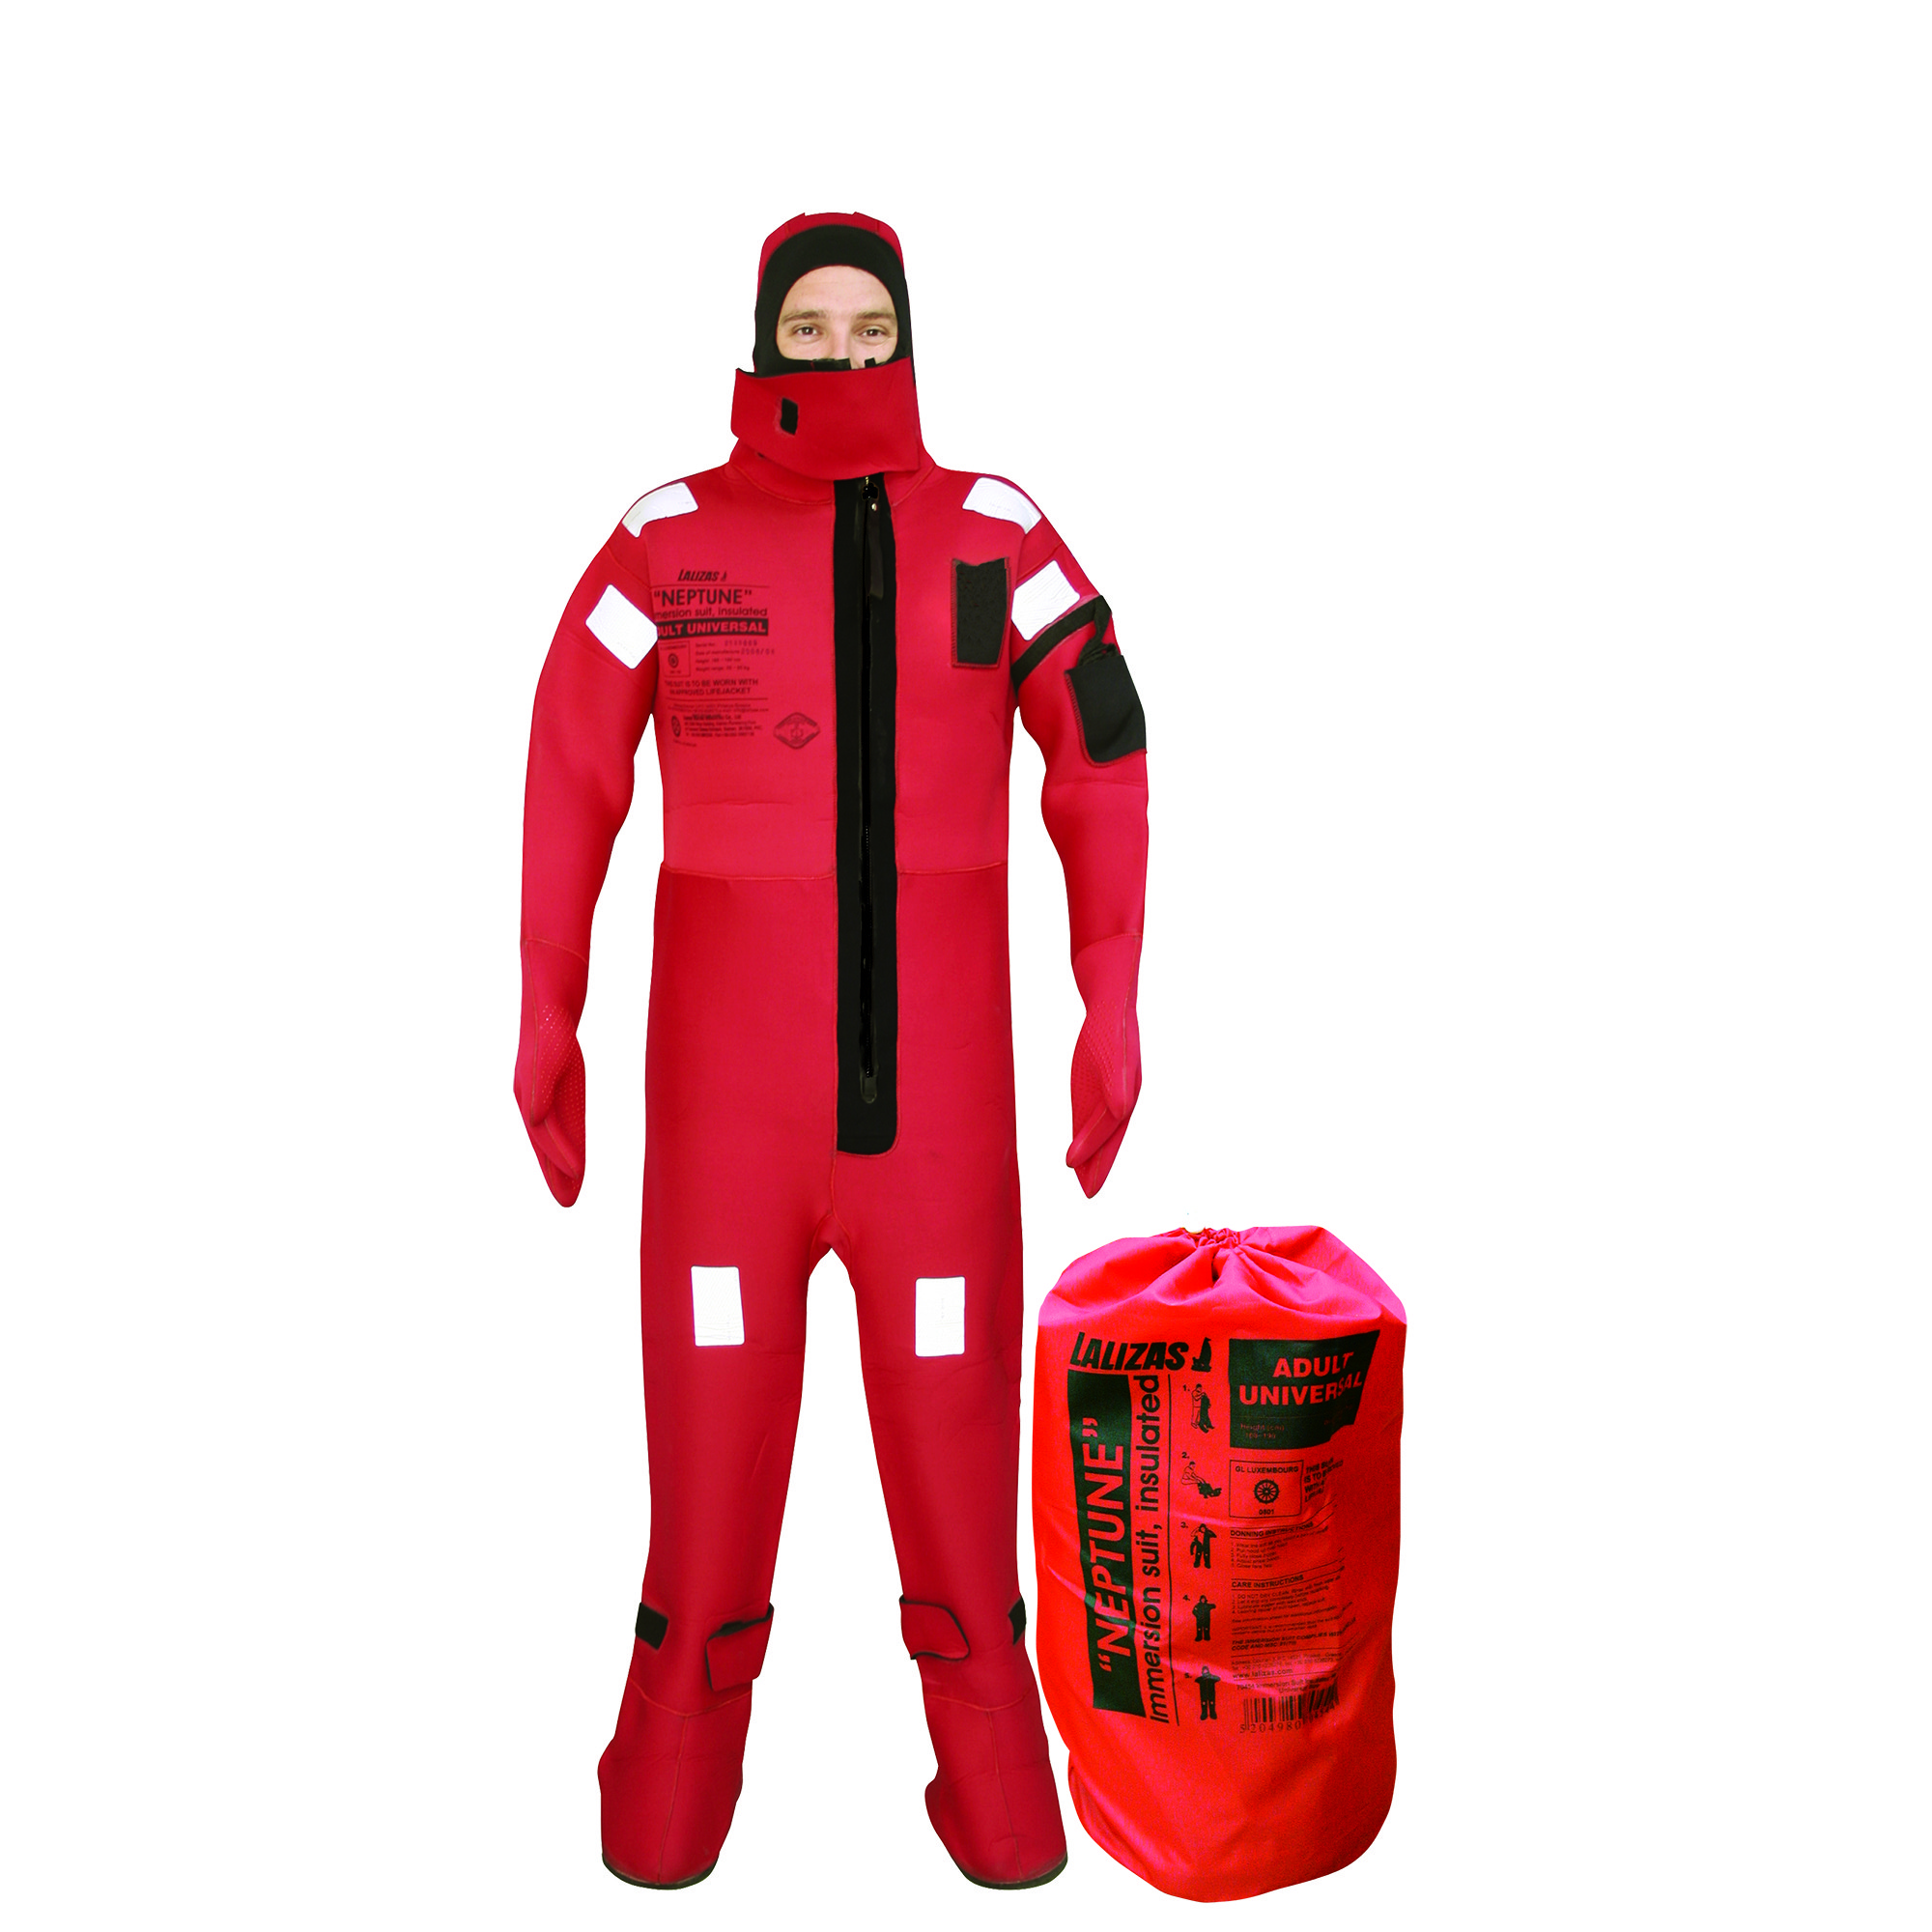 Спасательный костюм Lalizas Neptune 72746 размер S для роста 140-160 см и веса 40-80 кг с перчатками из резины